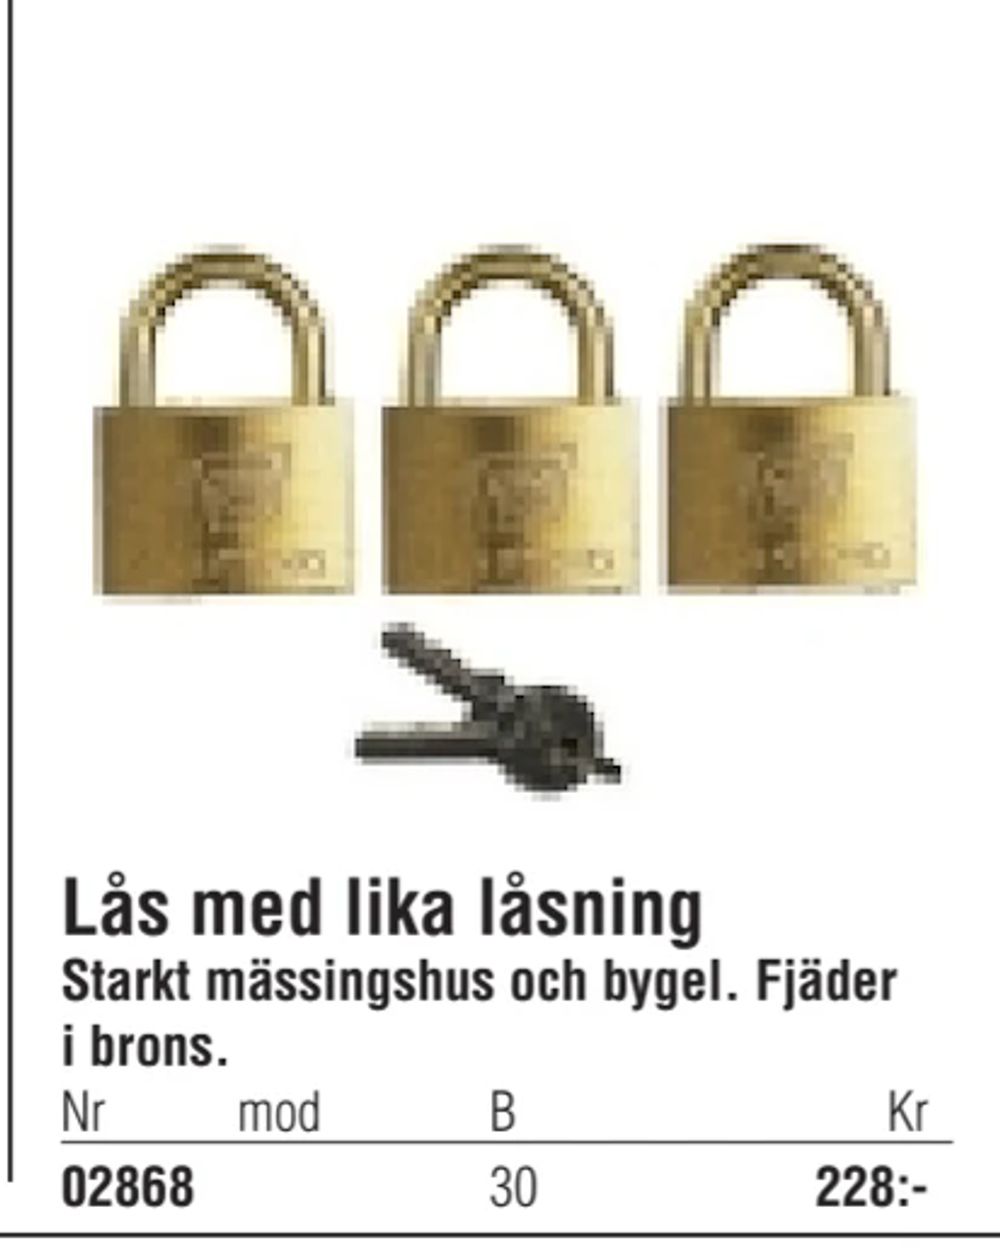 Erbjudanden på Lås med lika låsning från Erlandsons Brygga för 228 kr